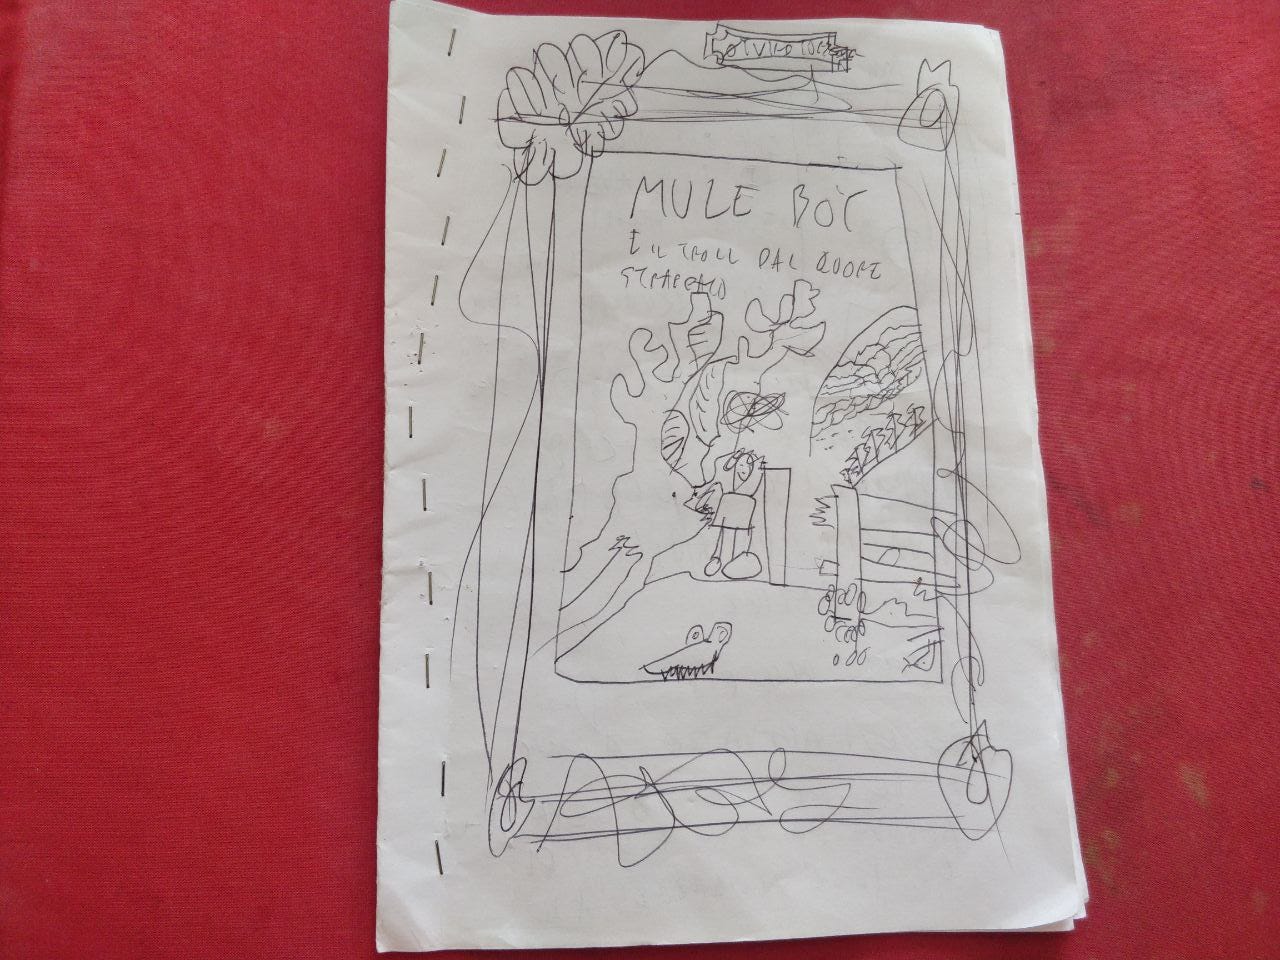 Sfondo rosso e foglio con un disegno da bambino che riproduce la copertina del fumetto "Mule Boy e il troll dal cuore strappato".